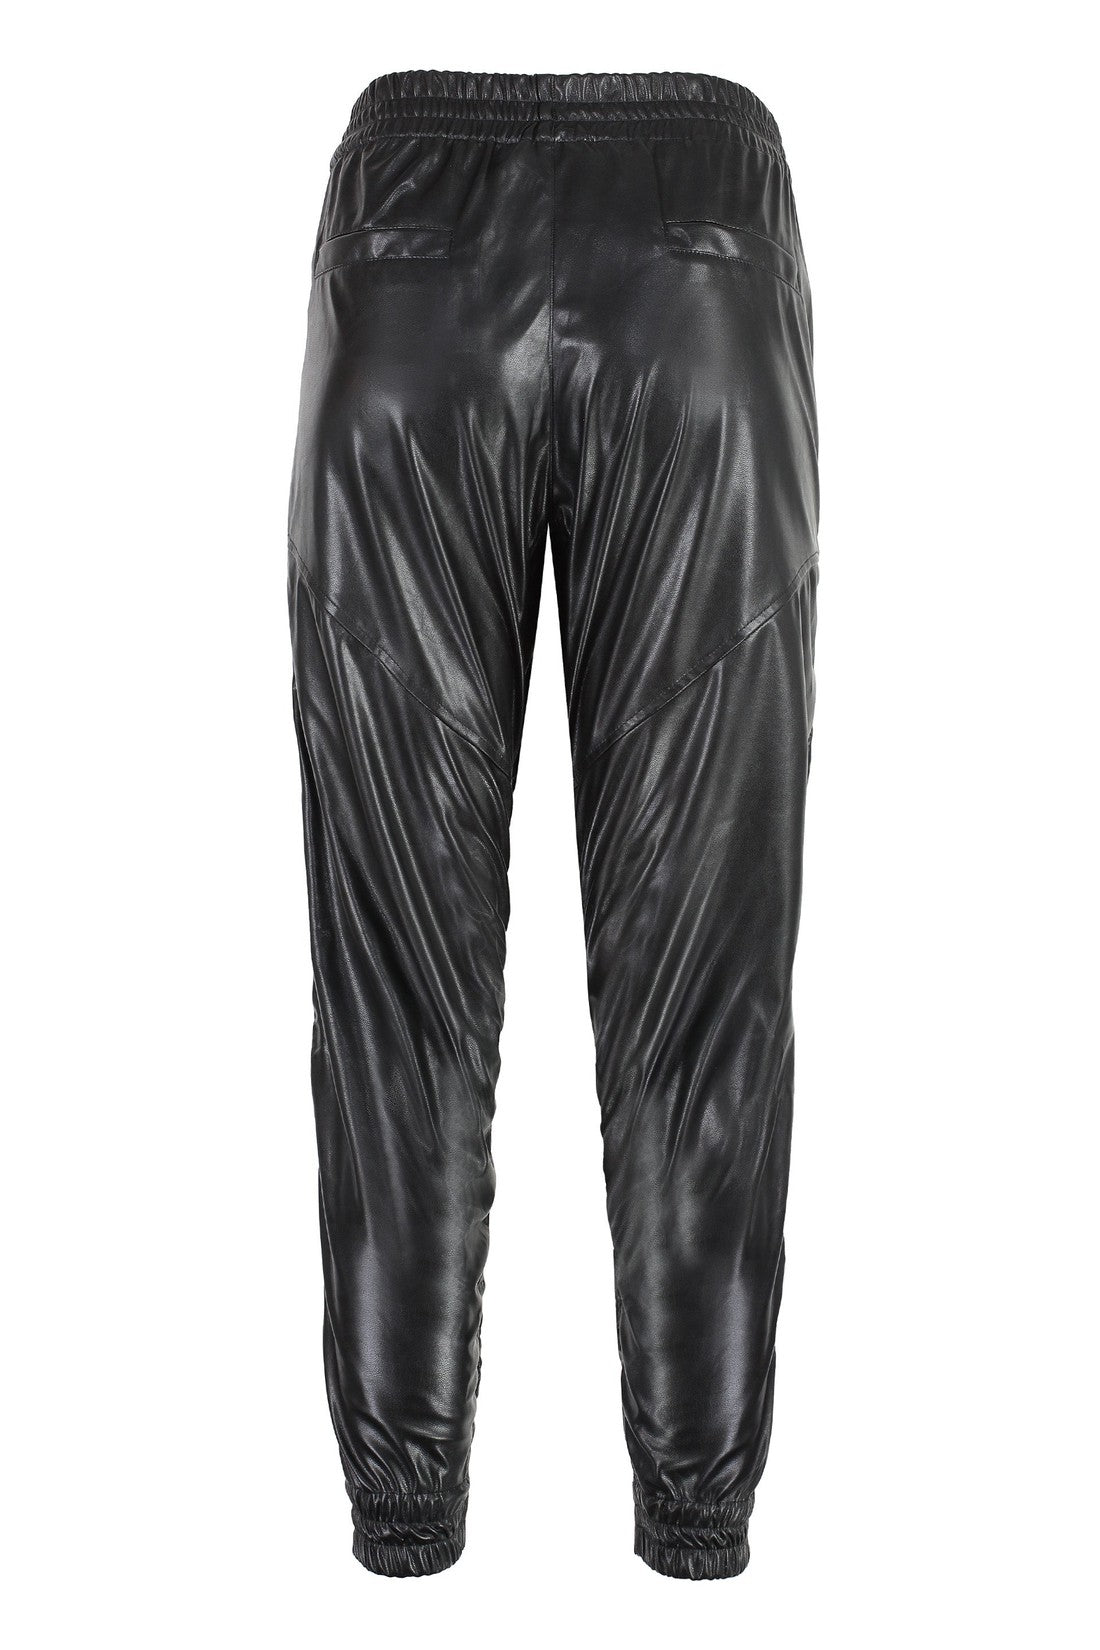 Marant étoile-OUTLET-SALE-Bolena faux leather trousers-ARCHIVIST